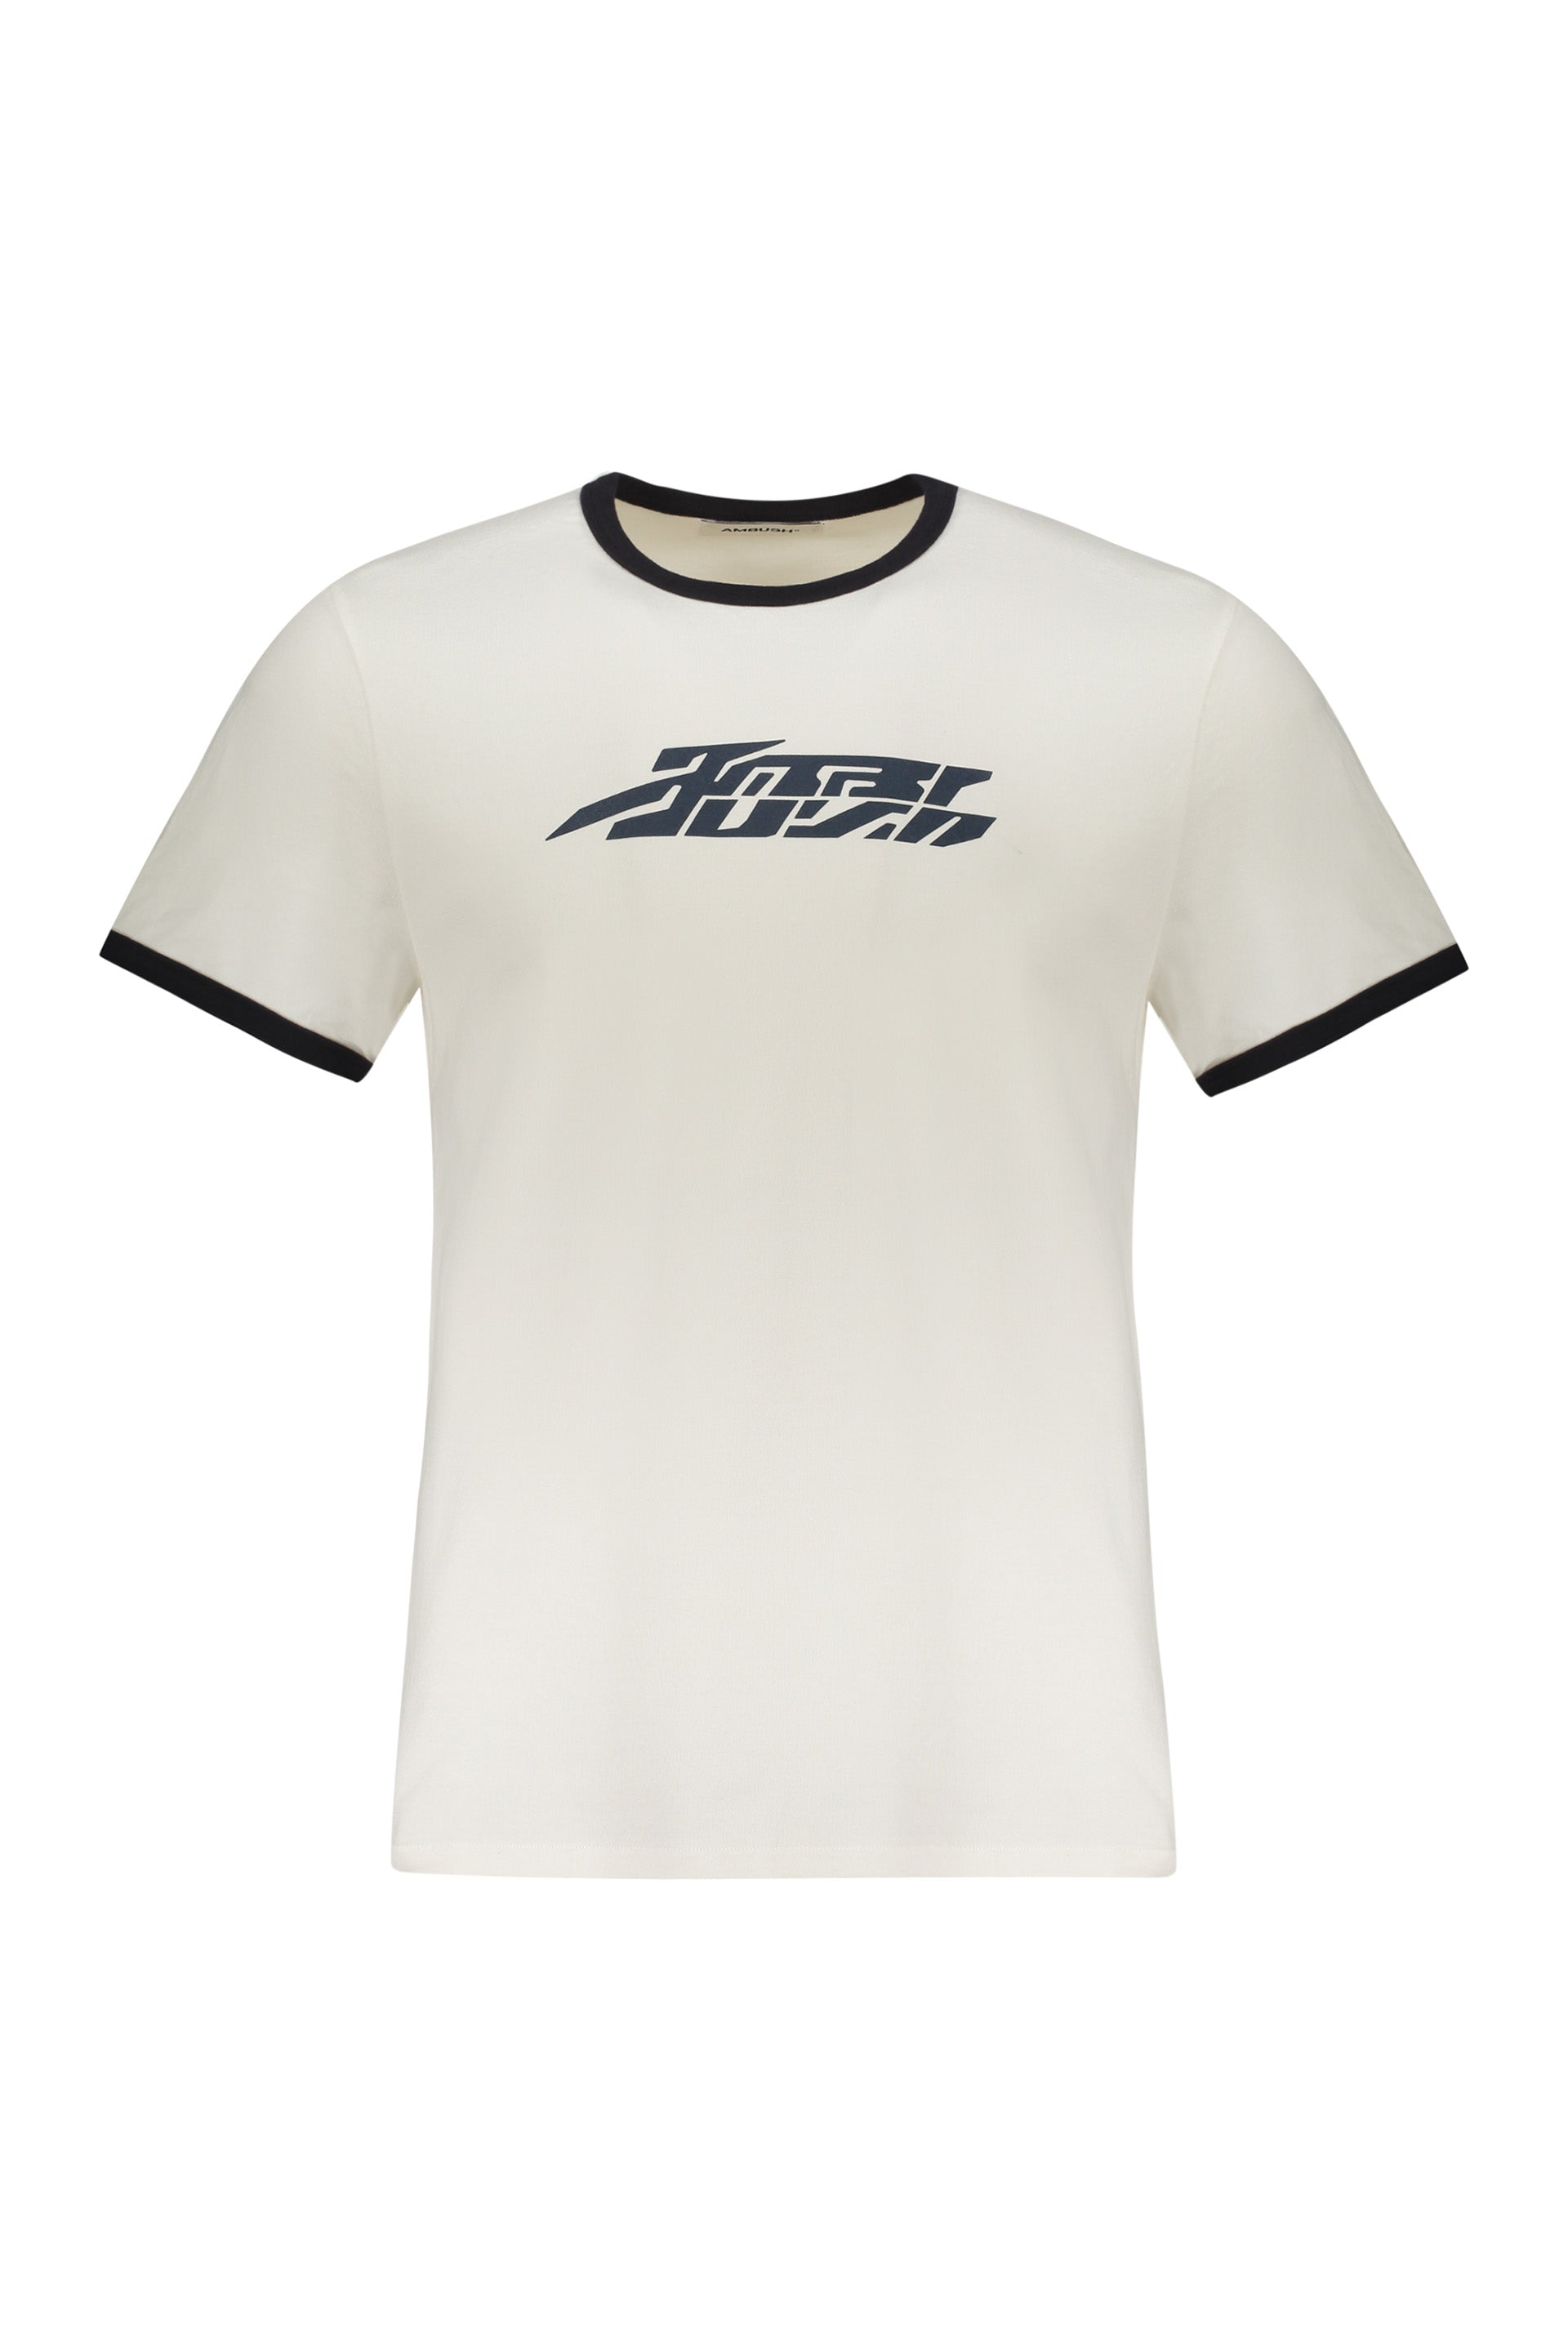 AMBUSH-OUTLET-SALE-Cotton-T-shirt-Shirts-L-ARCHIVE-COLLECTION_ca263efa-3ce6-4764-bf5b-fd35597e1a6c.jpg